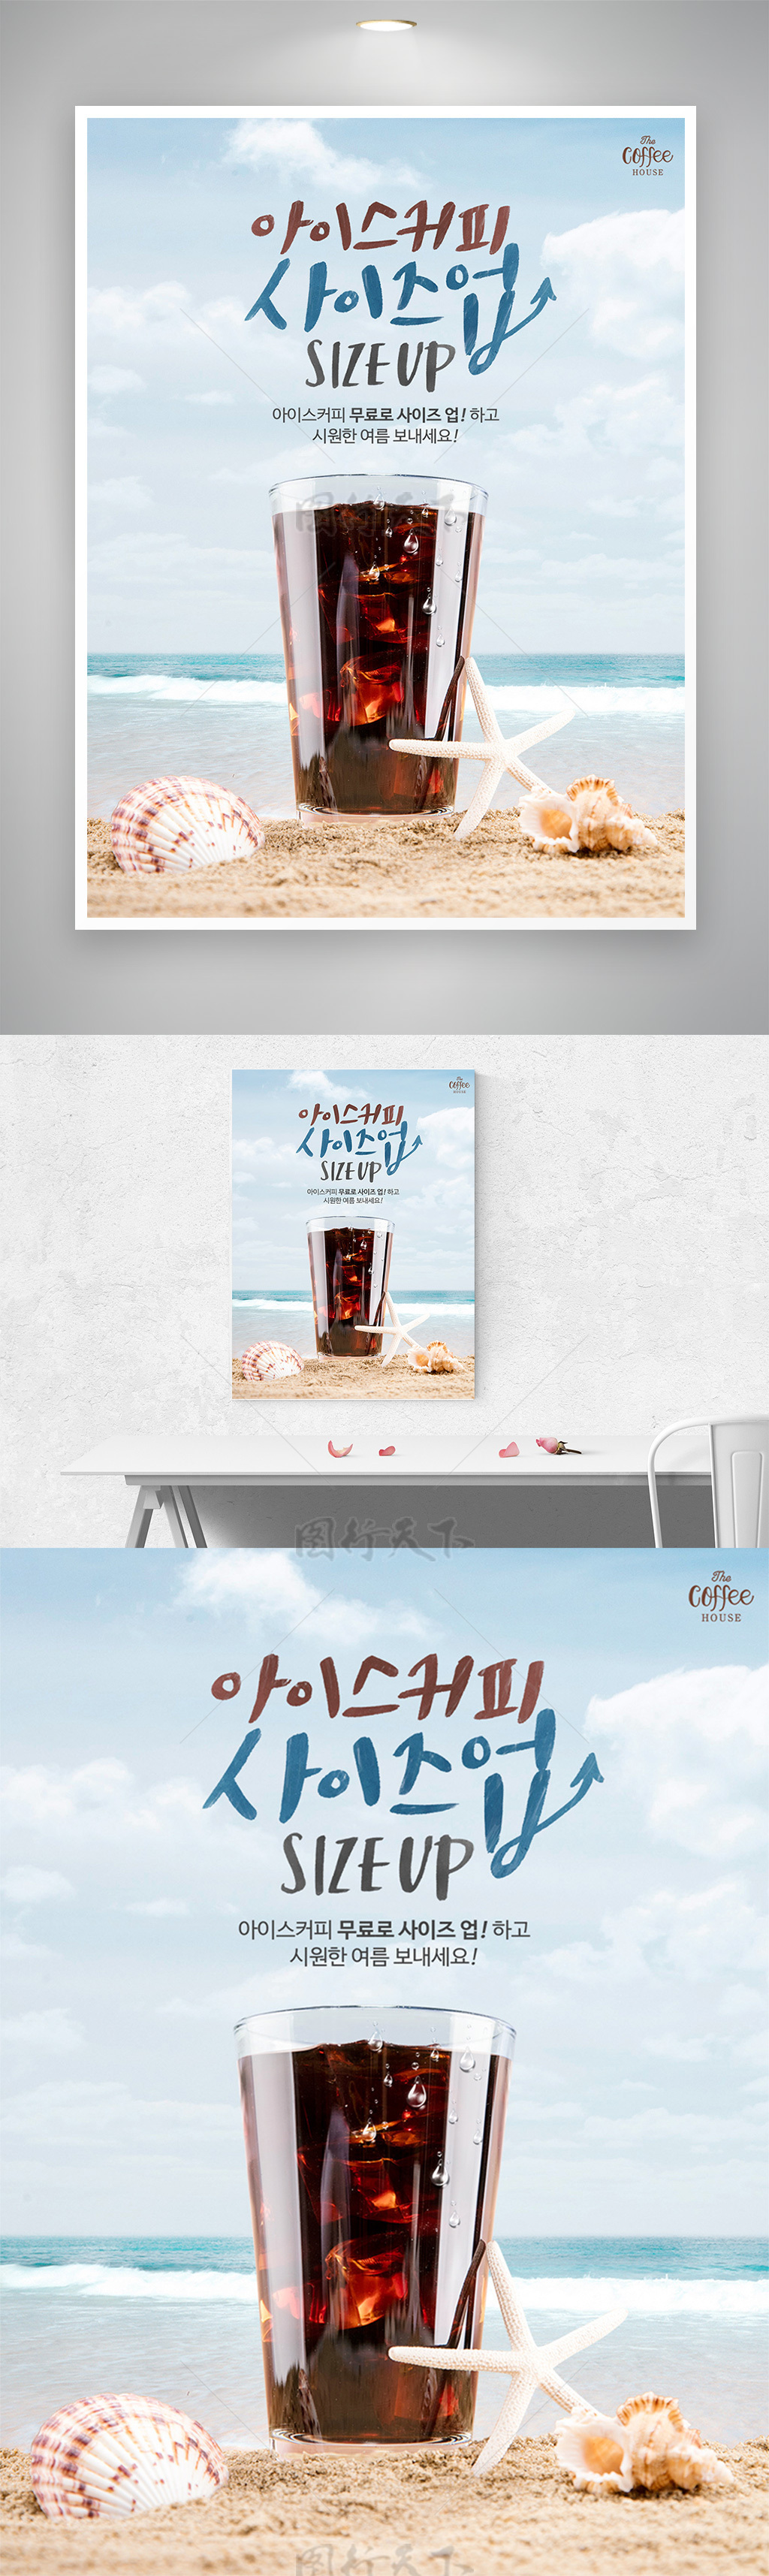 冷饮店冰可乐促销宣传海报模板